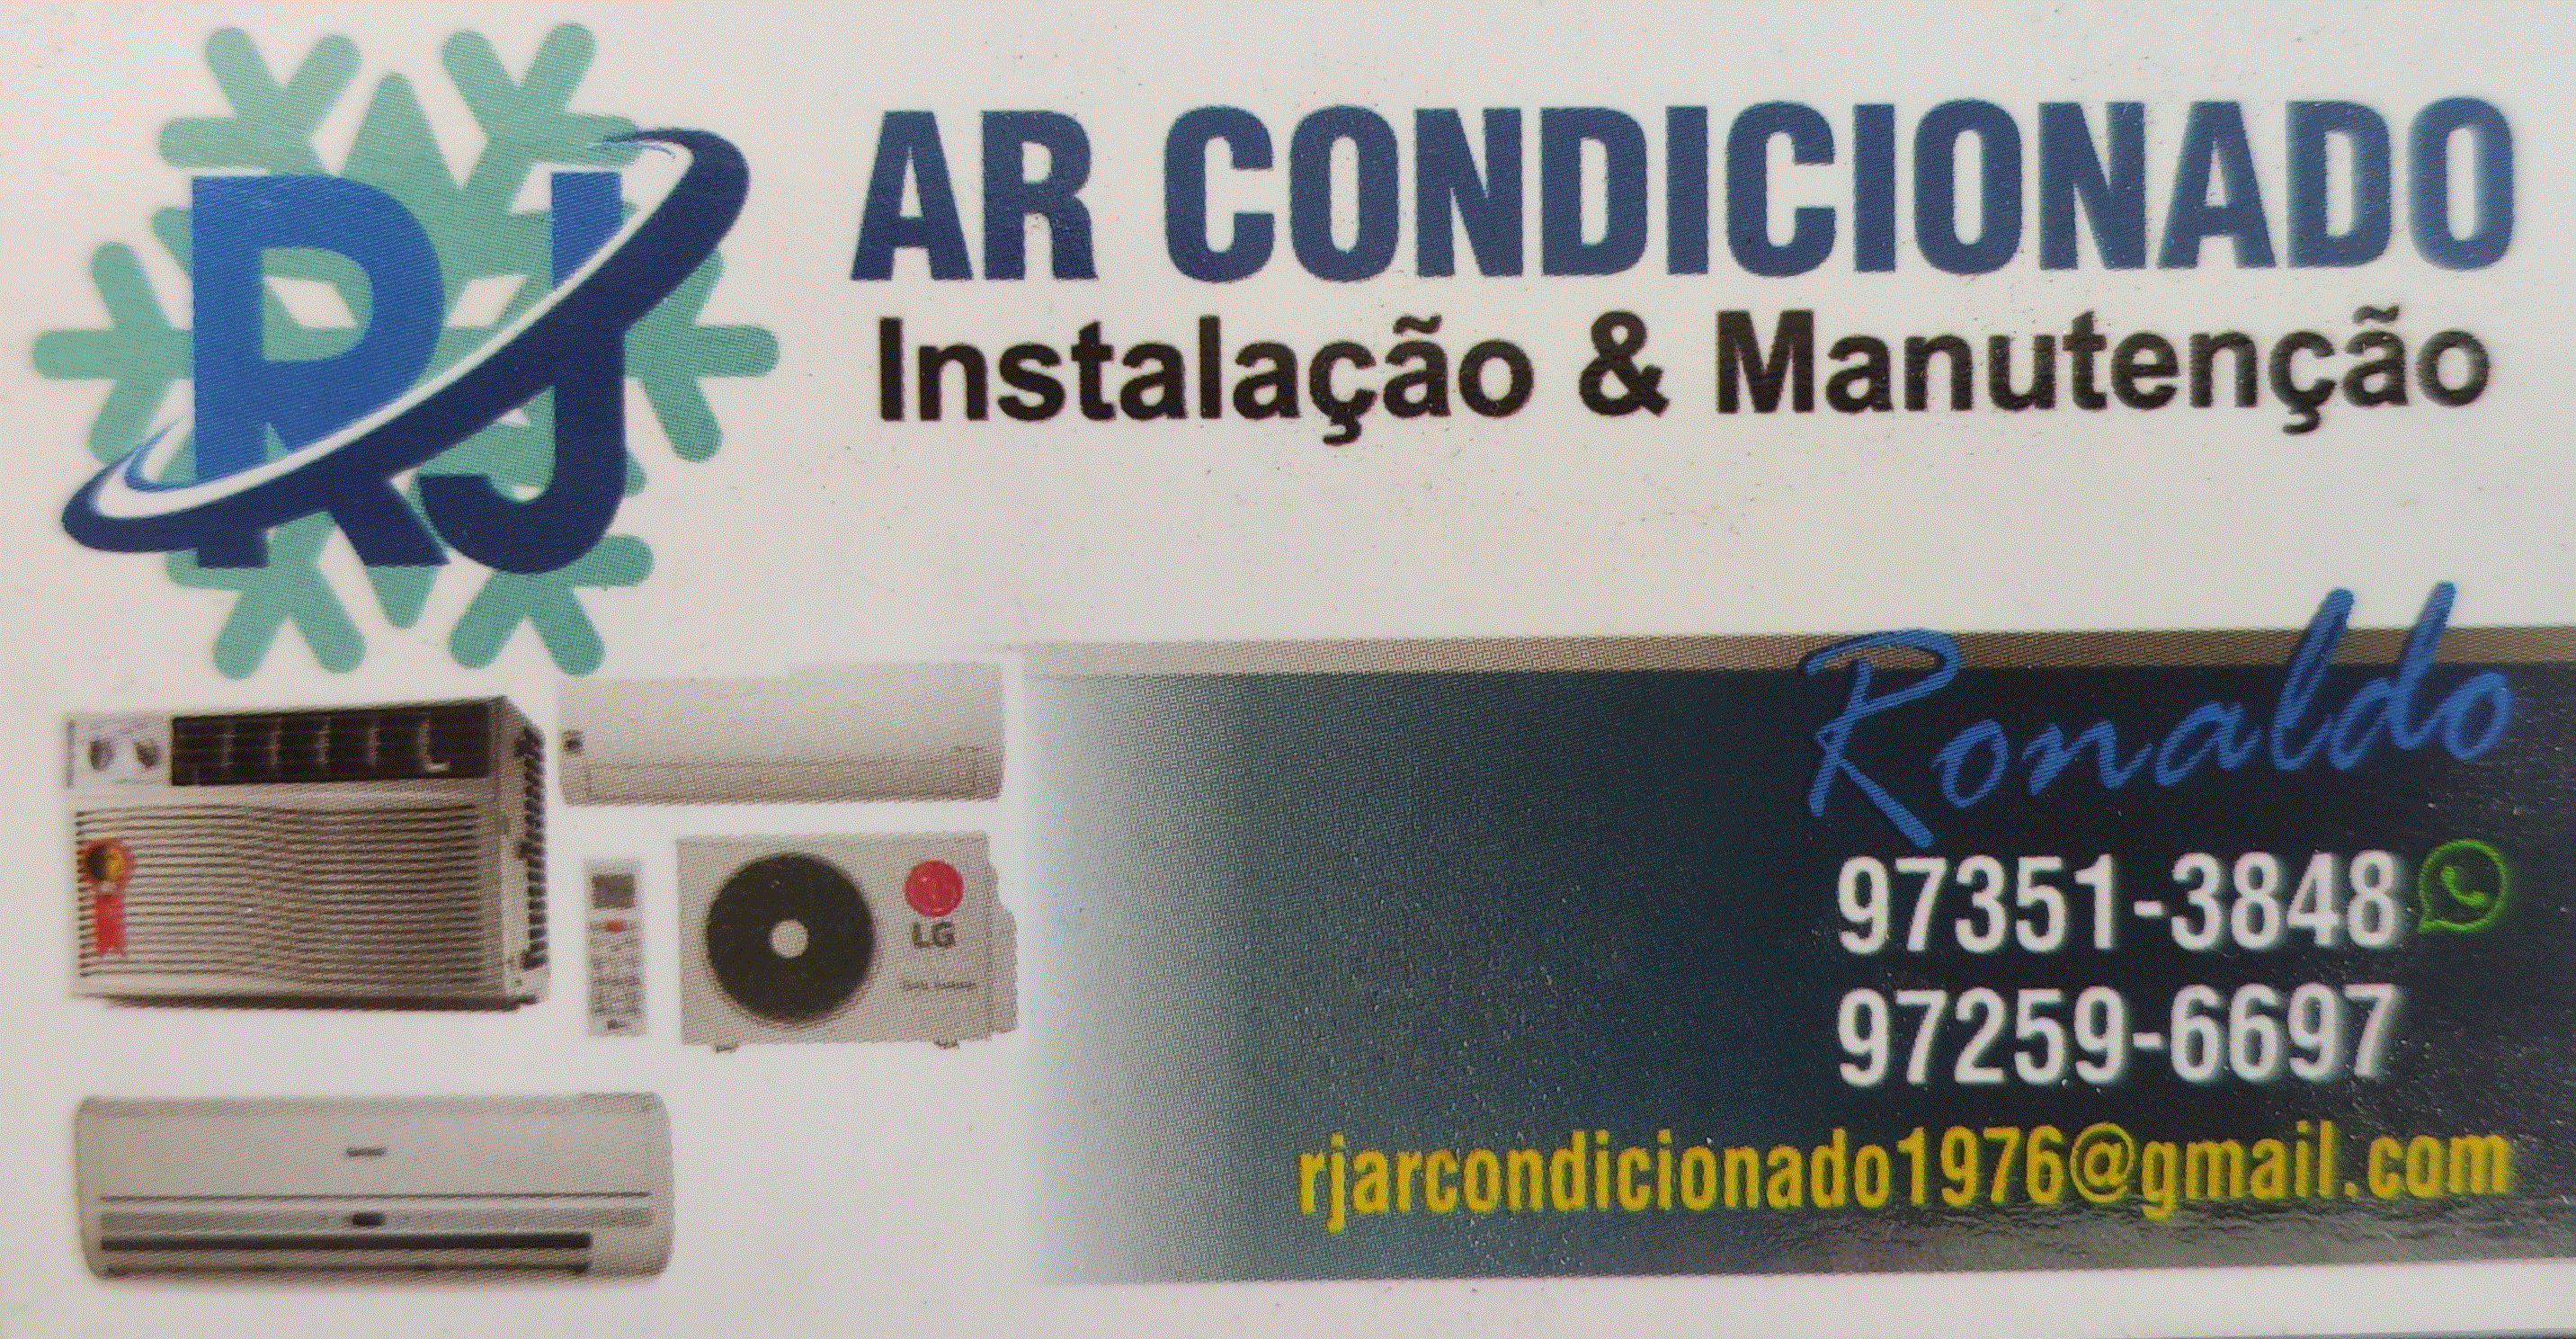 RJ ARCONDICIONADO REFRIGERAÇÃO E ELÉTRICA Logo